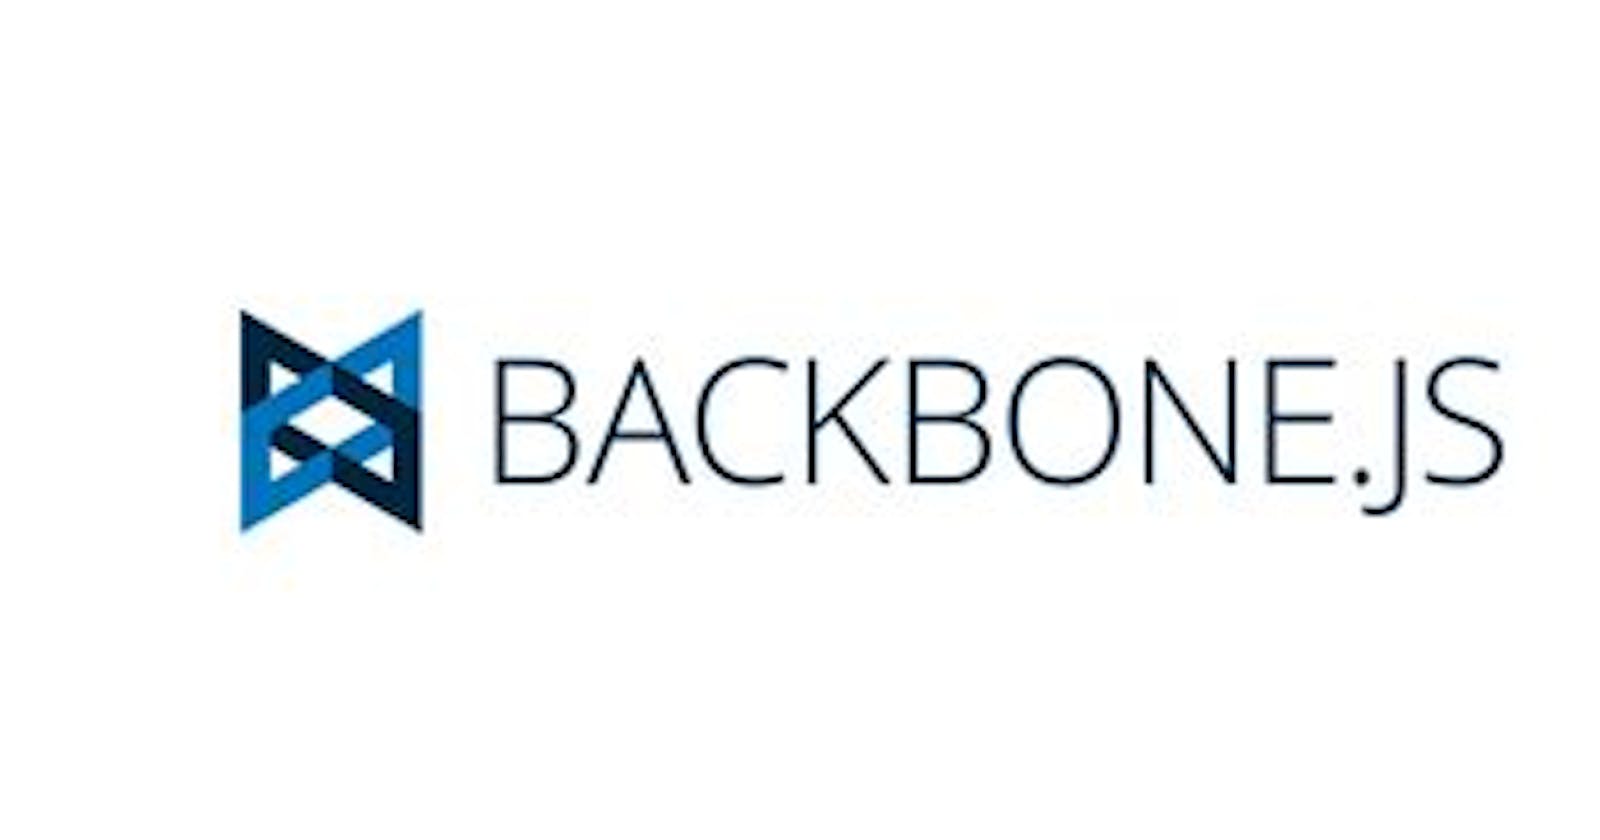 What Is Backbone.JS?